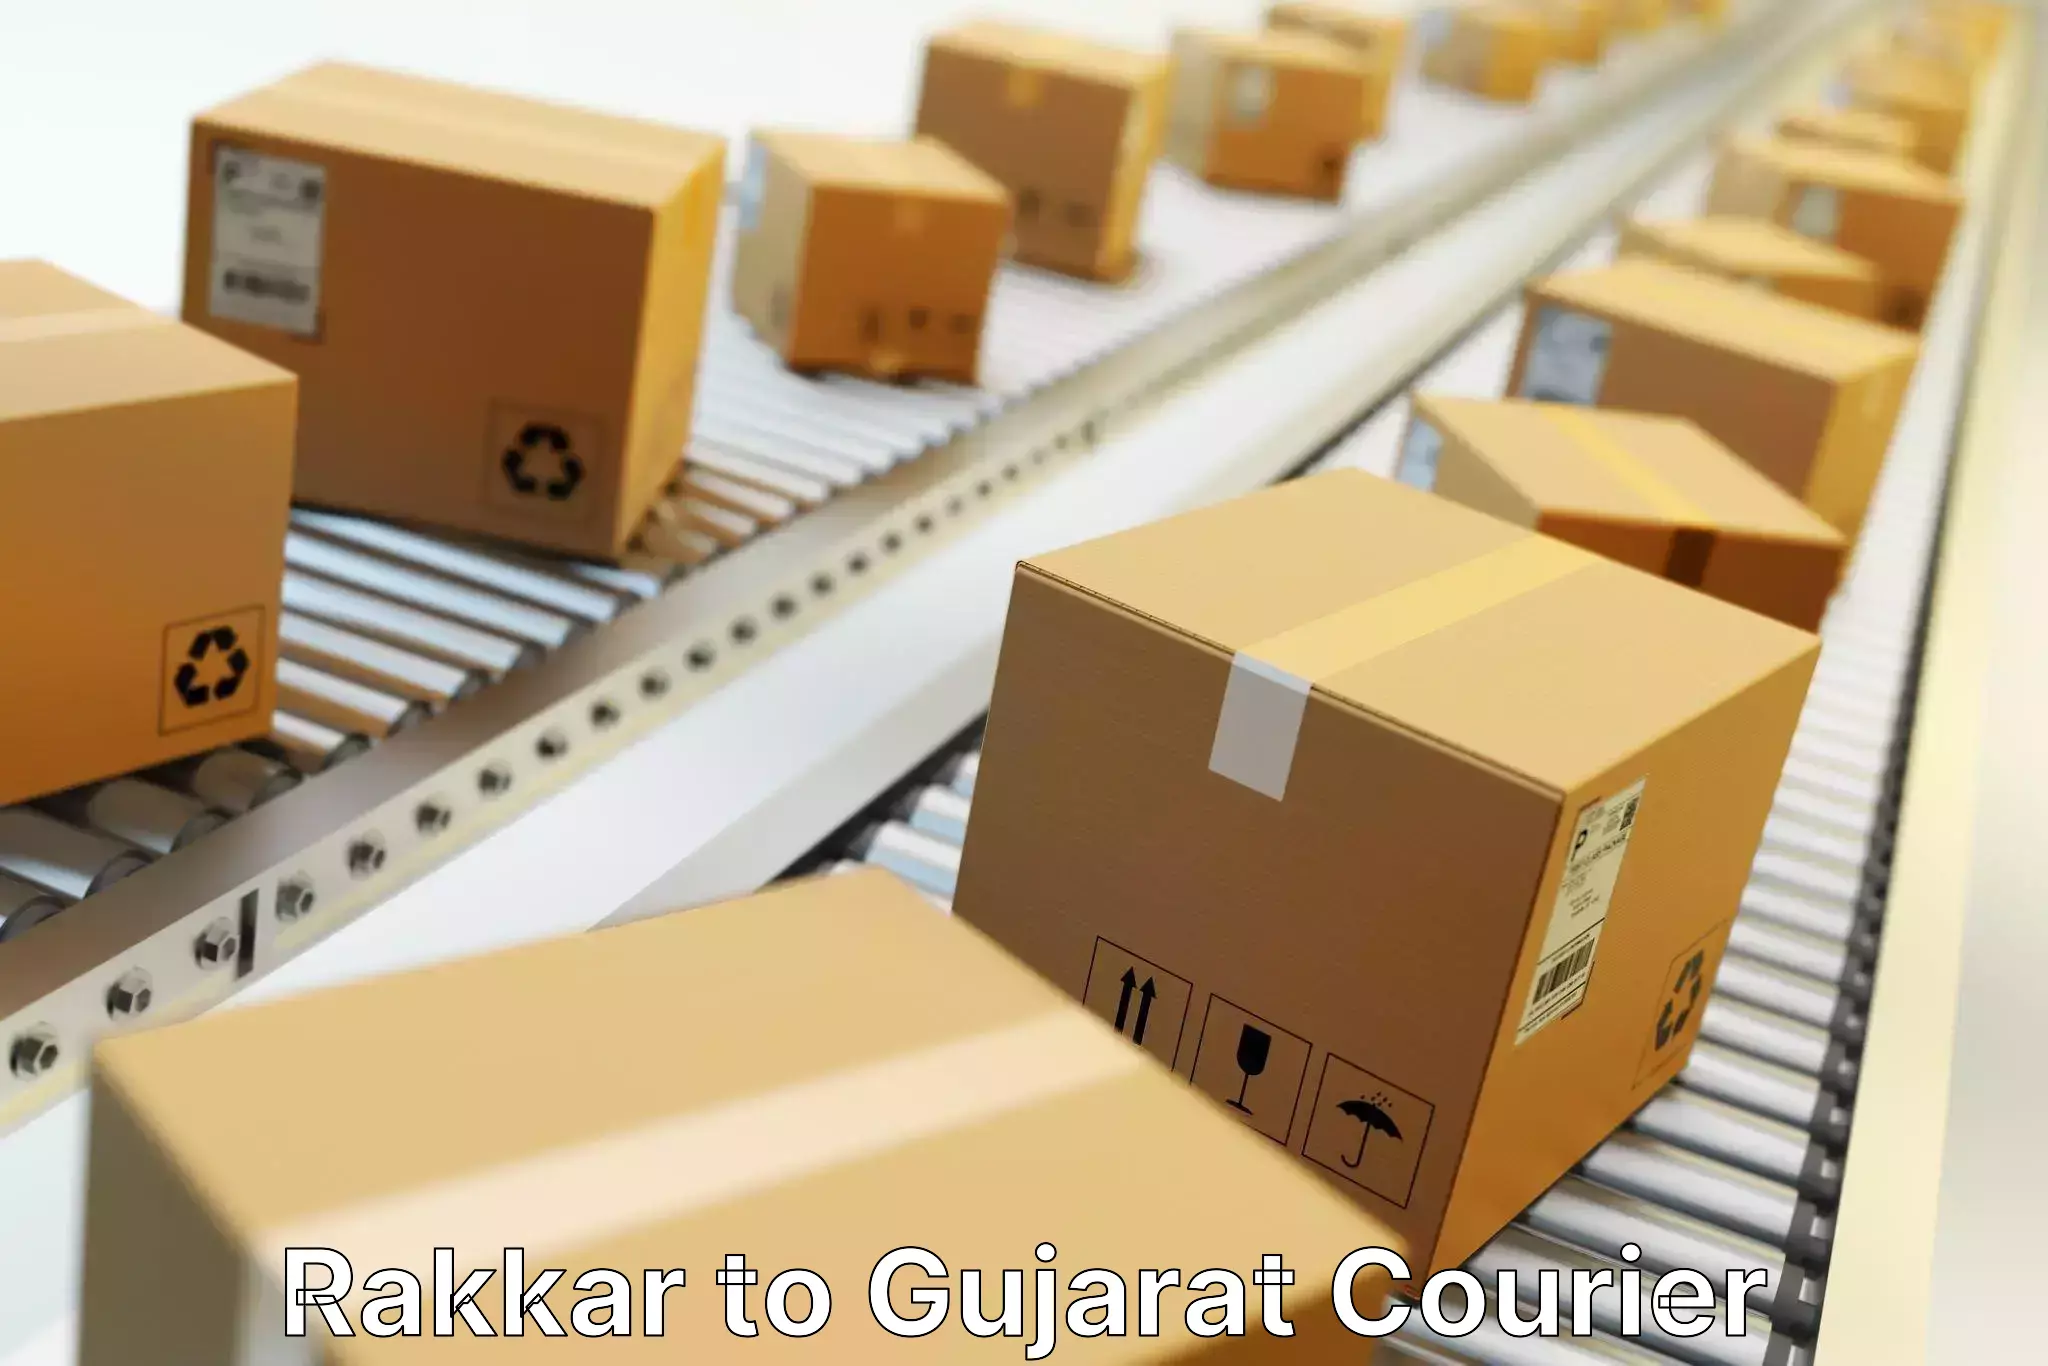 Global courier networks Rakkar to IIIT Vadodara